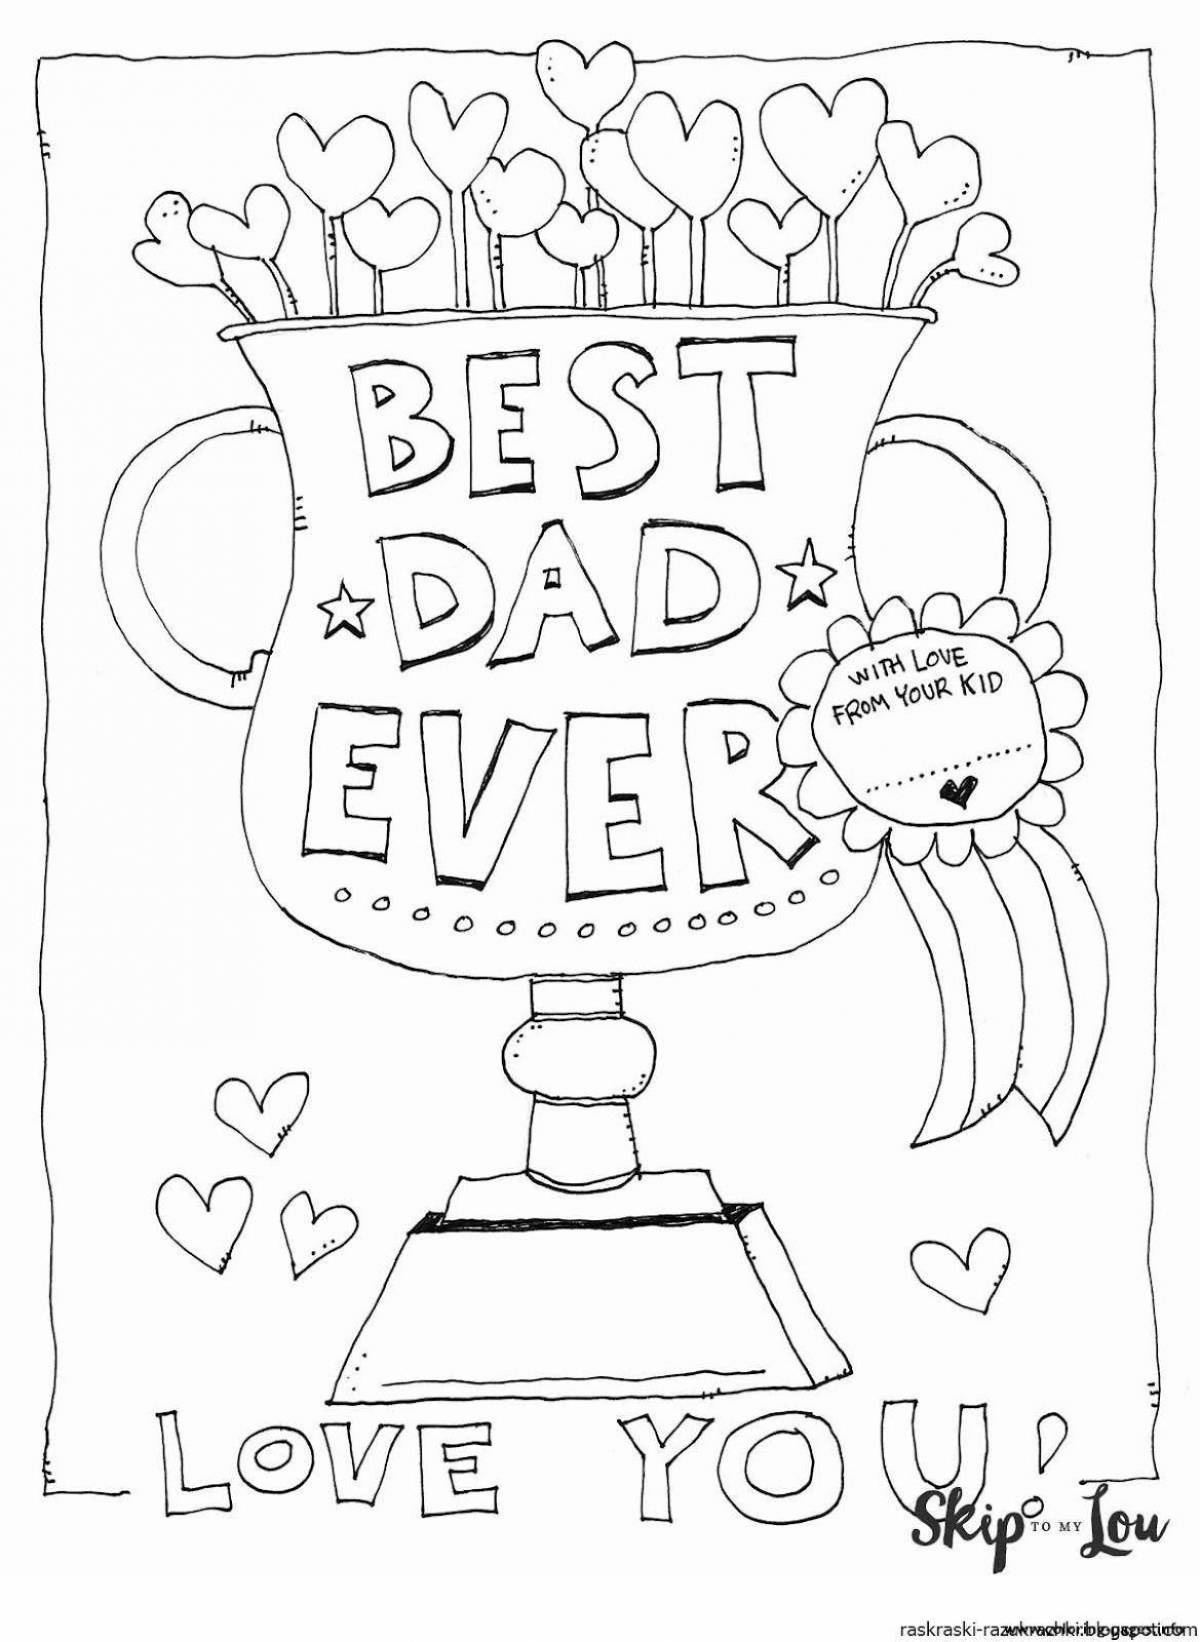 Цветная поздравительная открытка для папы от дочери